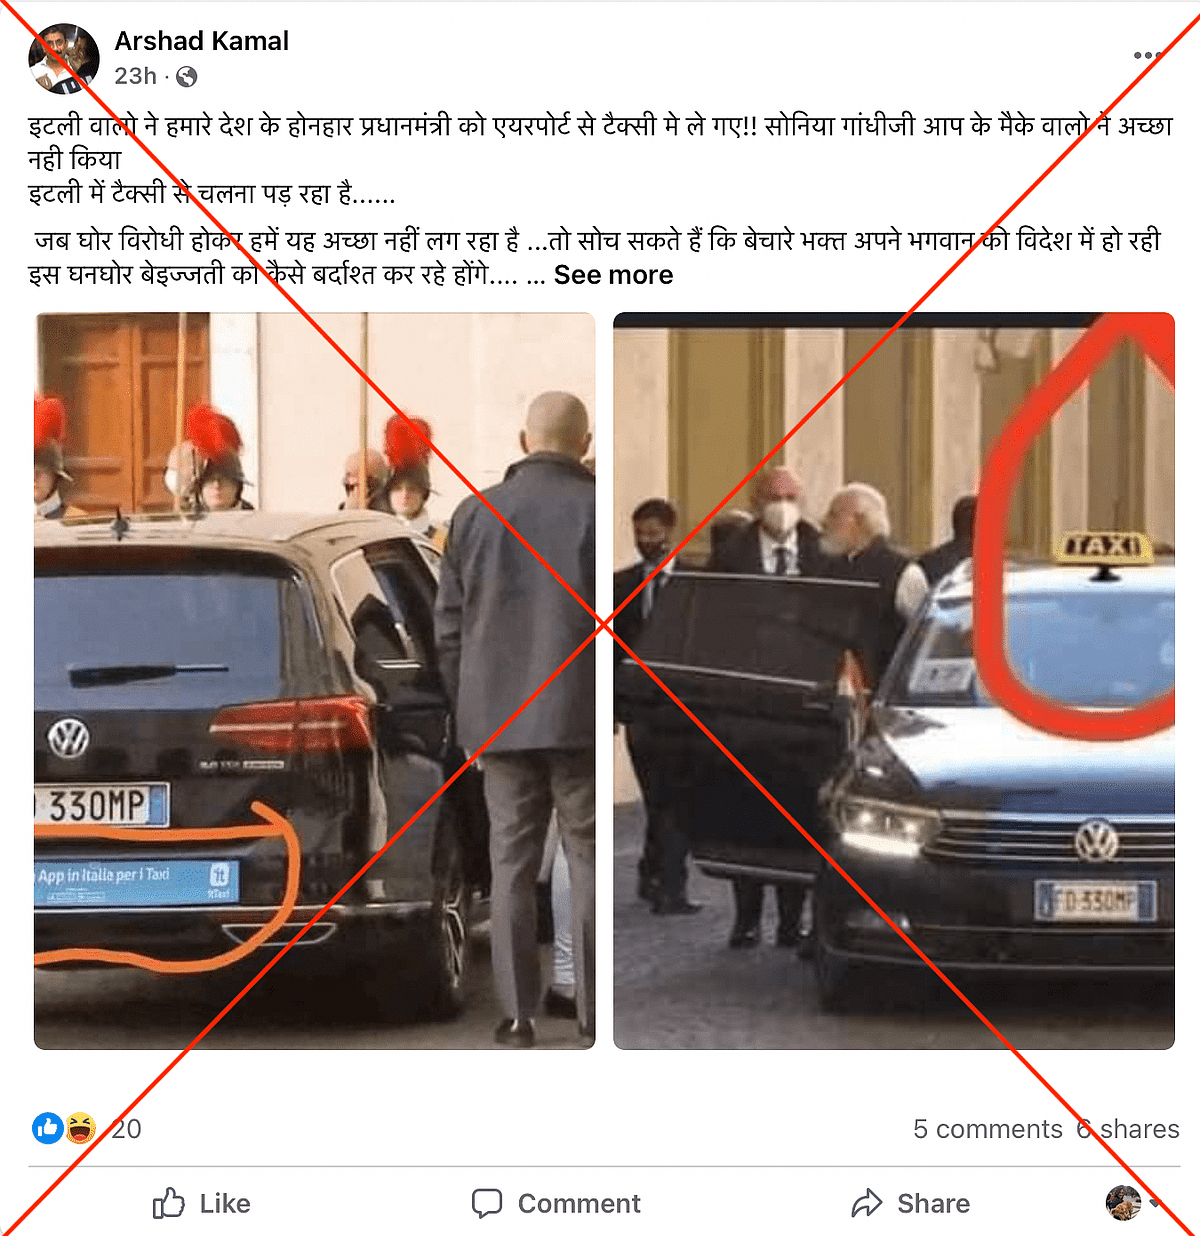 पीएम नरेंद्र मोदी के वेटिकन दौरे की दोनों तस्वीरों में दिख रही कारों को एडिट कर उन पर 'TAXI' जोड़ दिया गया है.